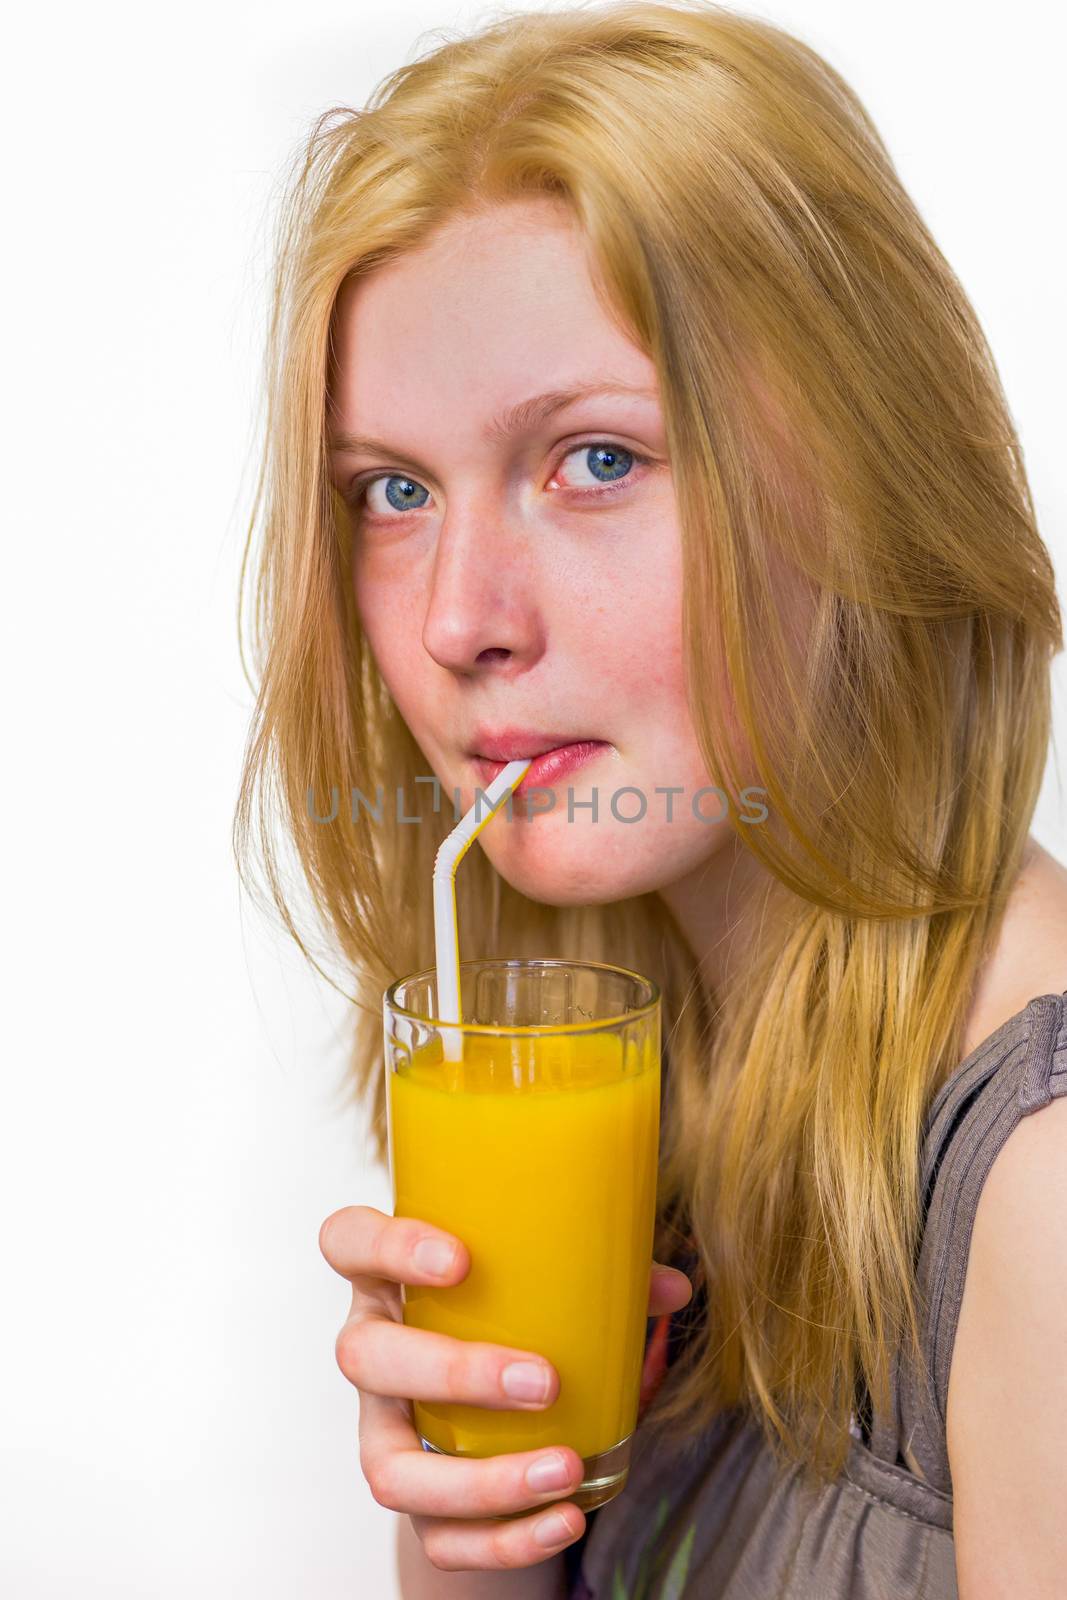 Blonde dutch teenage girl drinking orange juice with straw isolated on white background